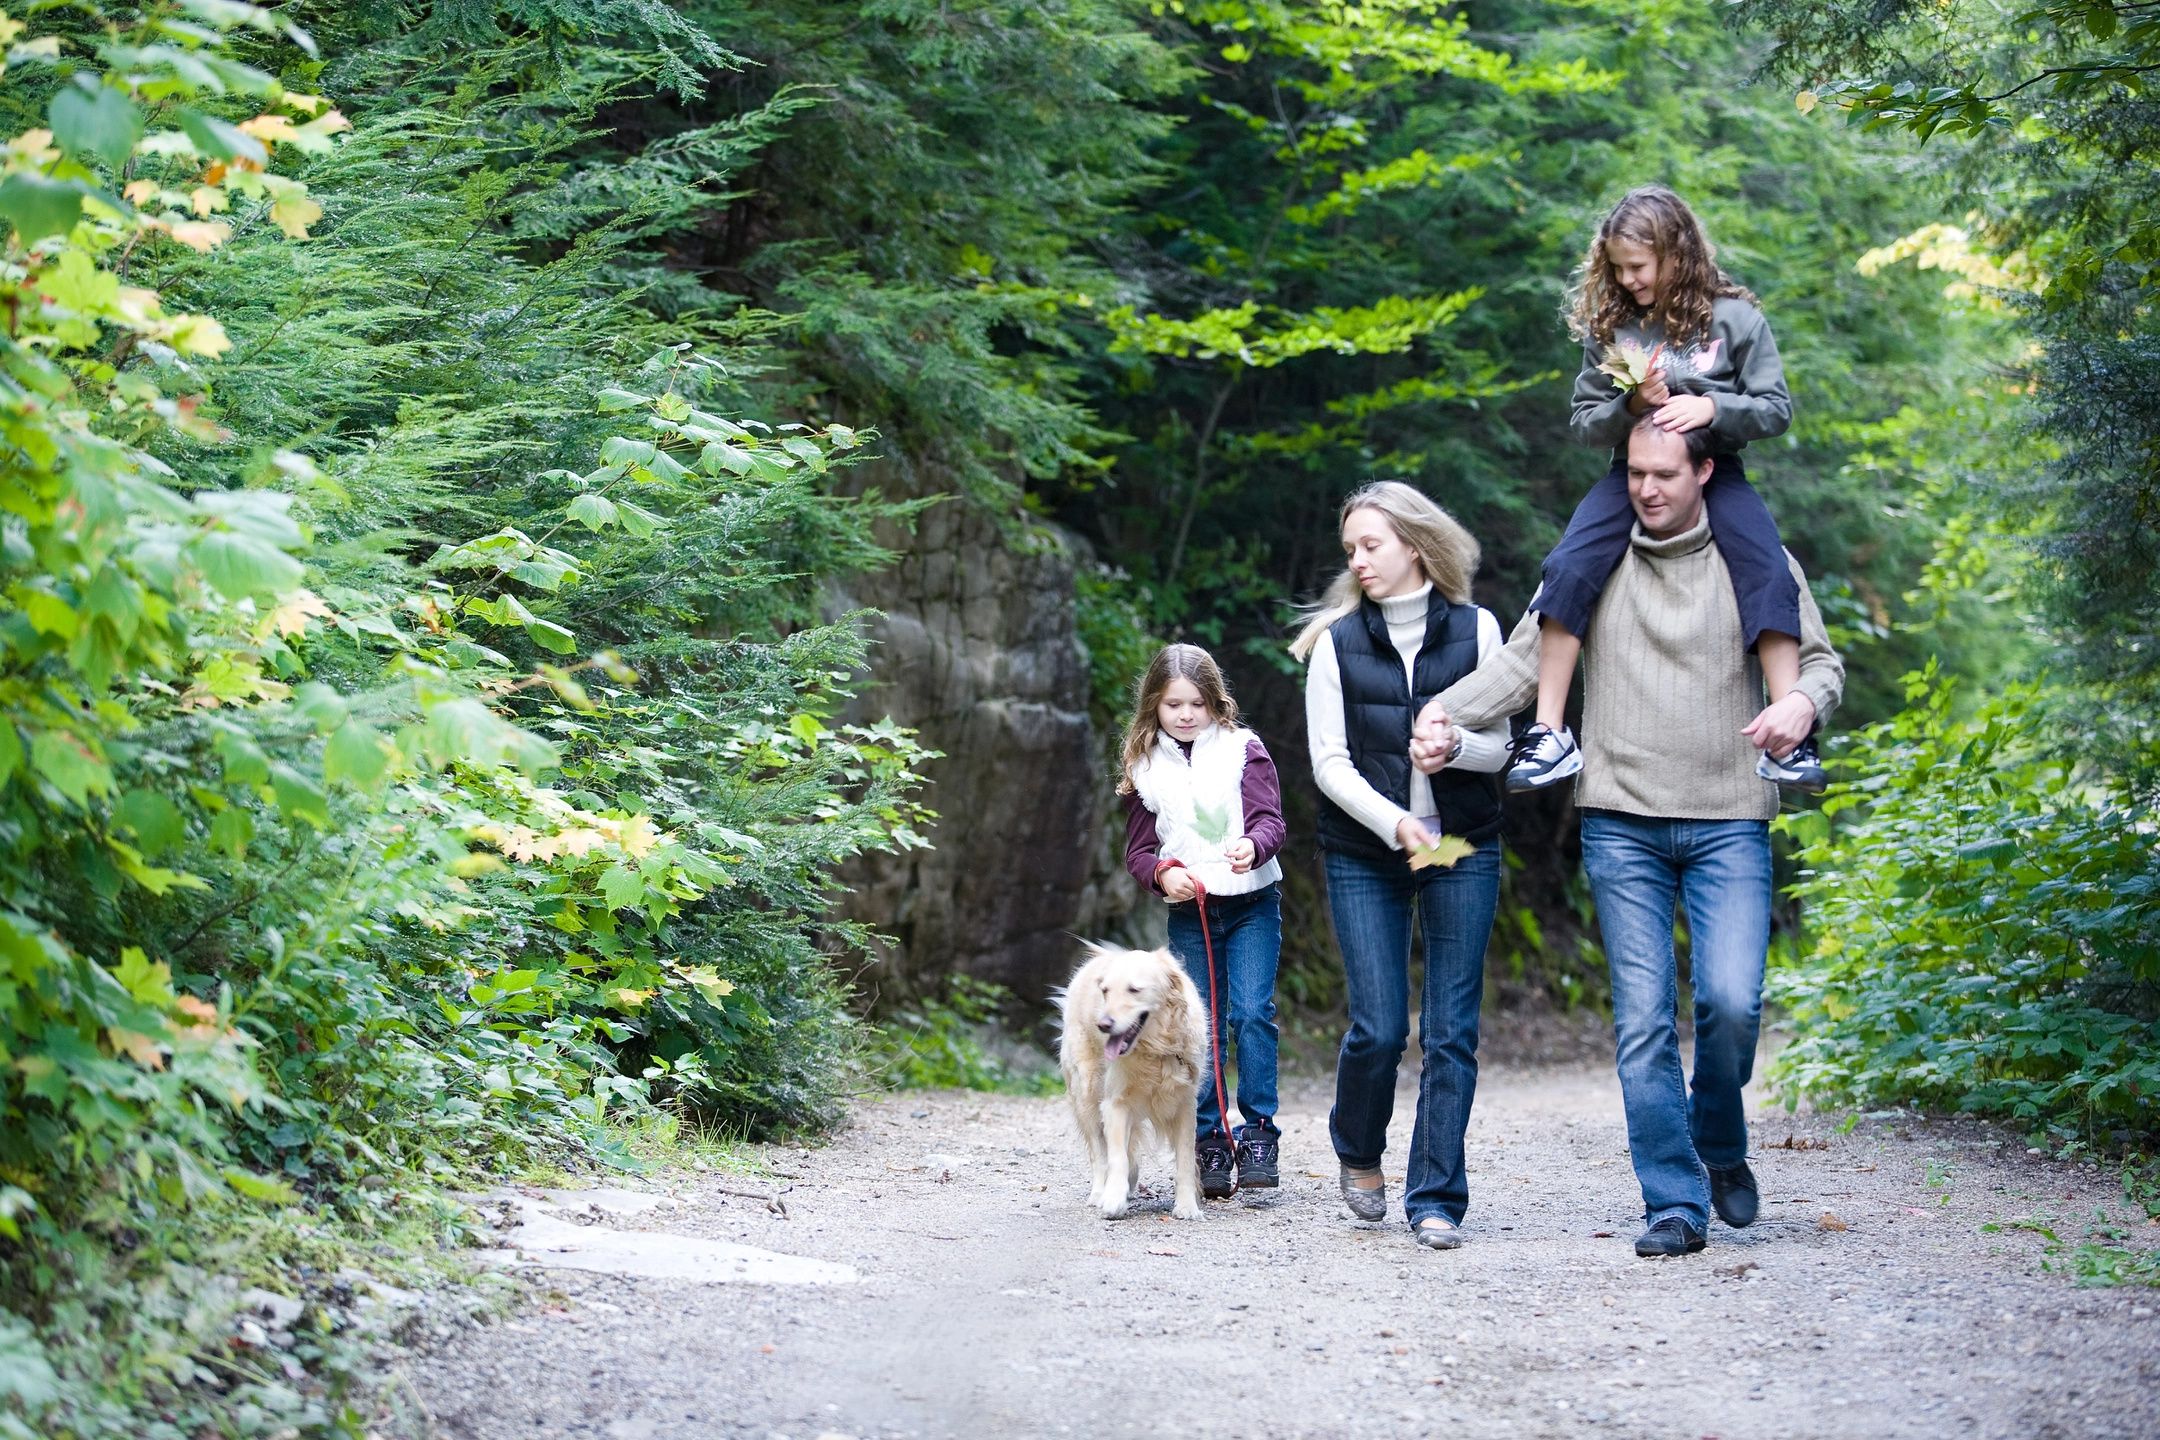 Погулять по лесу. Прогулка на природе. Прогулка в лесу. Семья на прогулке. Пешие прогулки на природе.